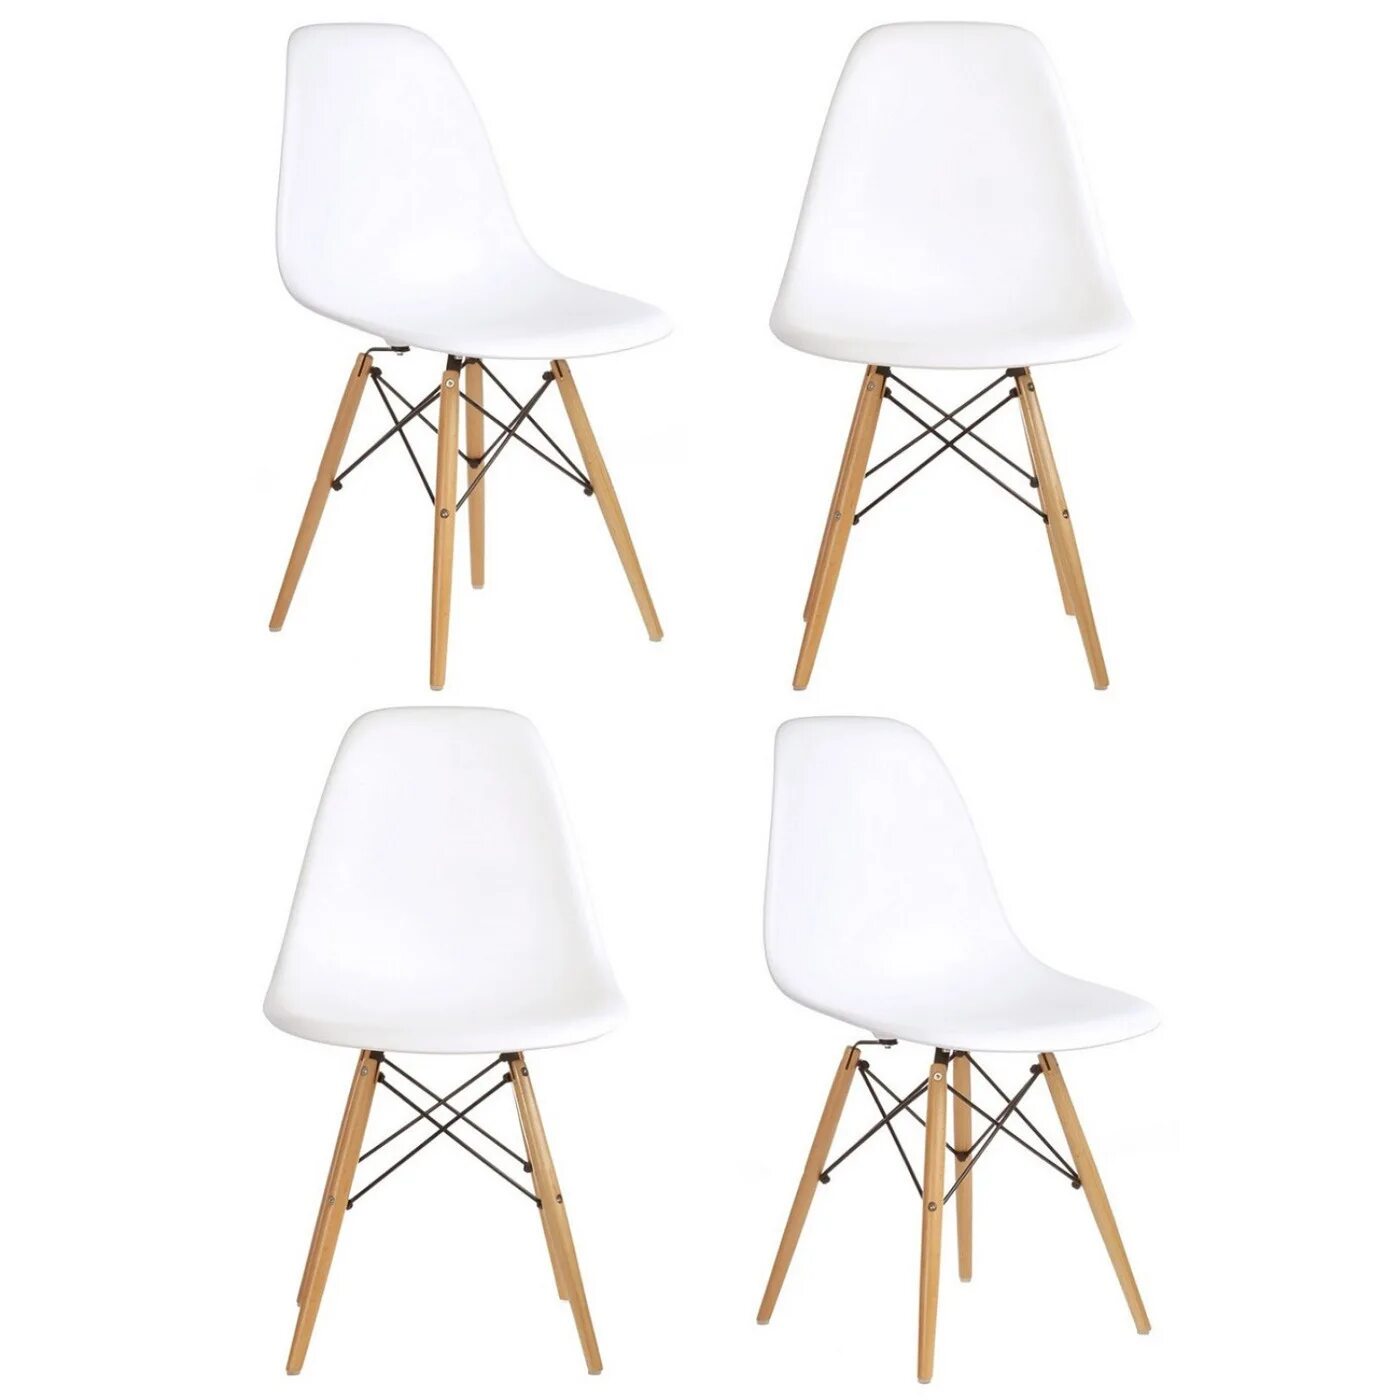 Комплект стульев 4 шт для кухни. Стул Eames Style Chair White. Стул Eames DSW. Стул DSW белый. Стул Style DSW белый.